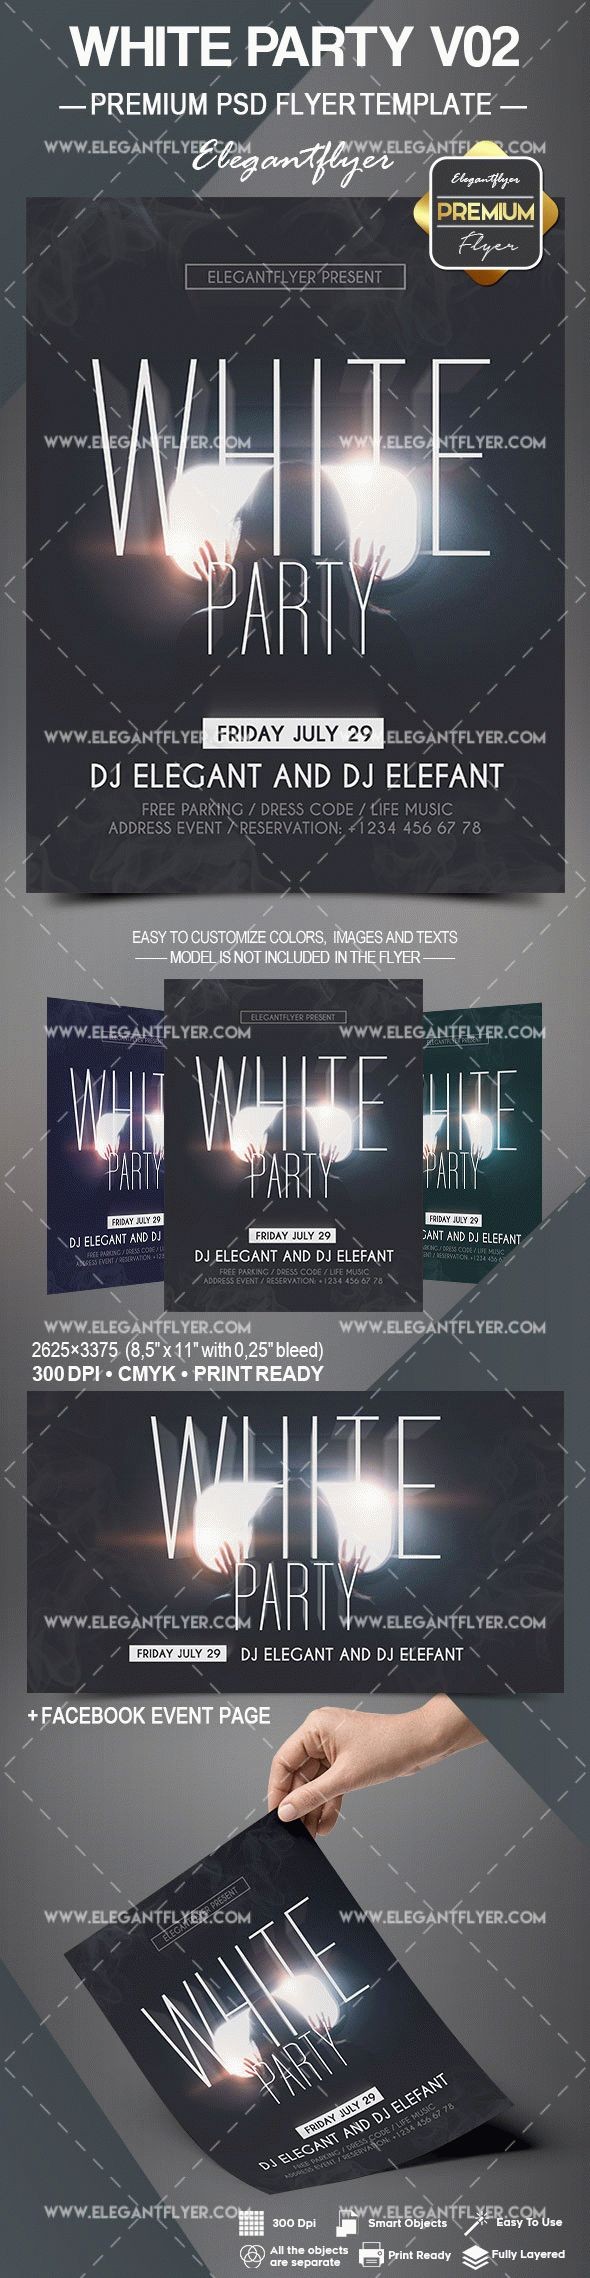 White Party V02 by ElegantFlyer